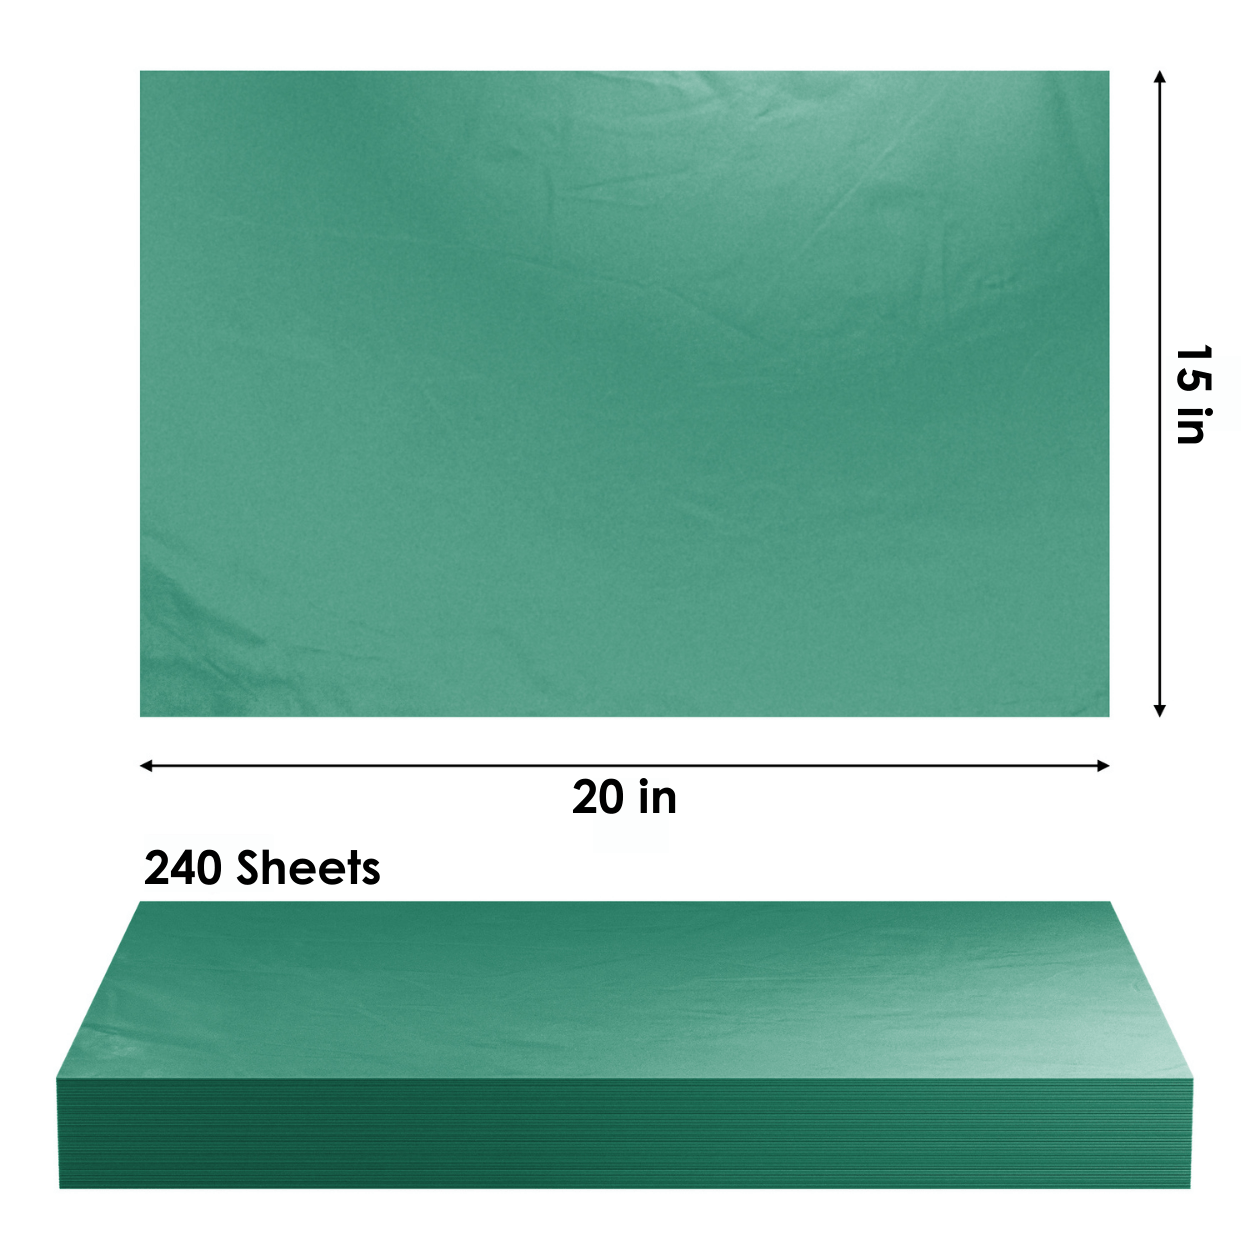 Dark Green Tissue Paper - 15x20